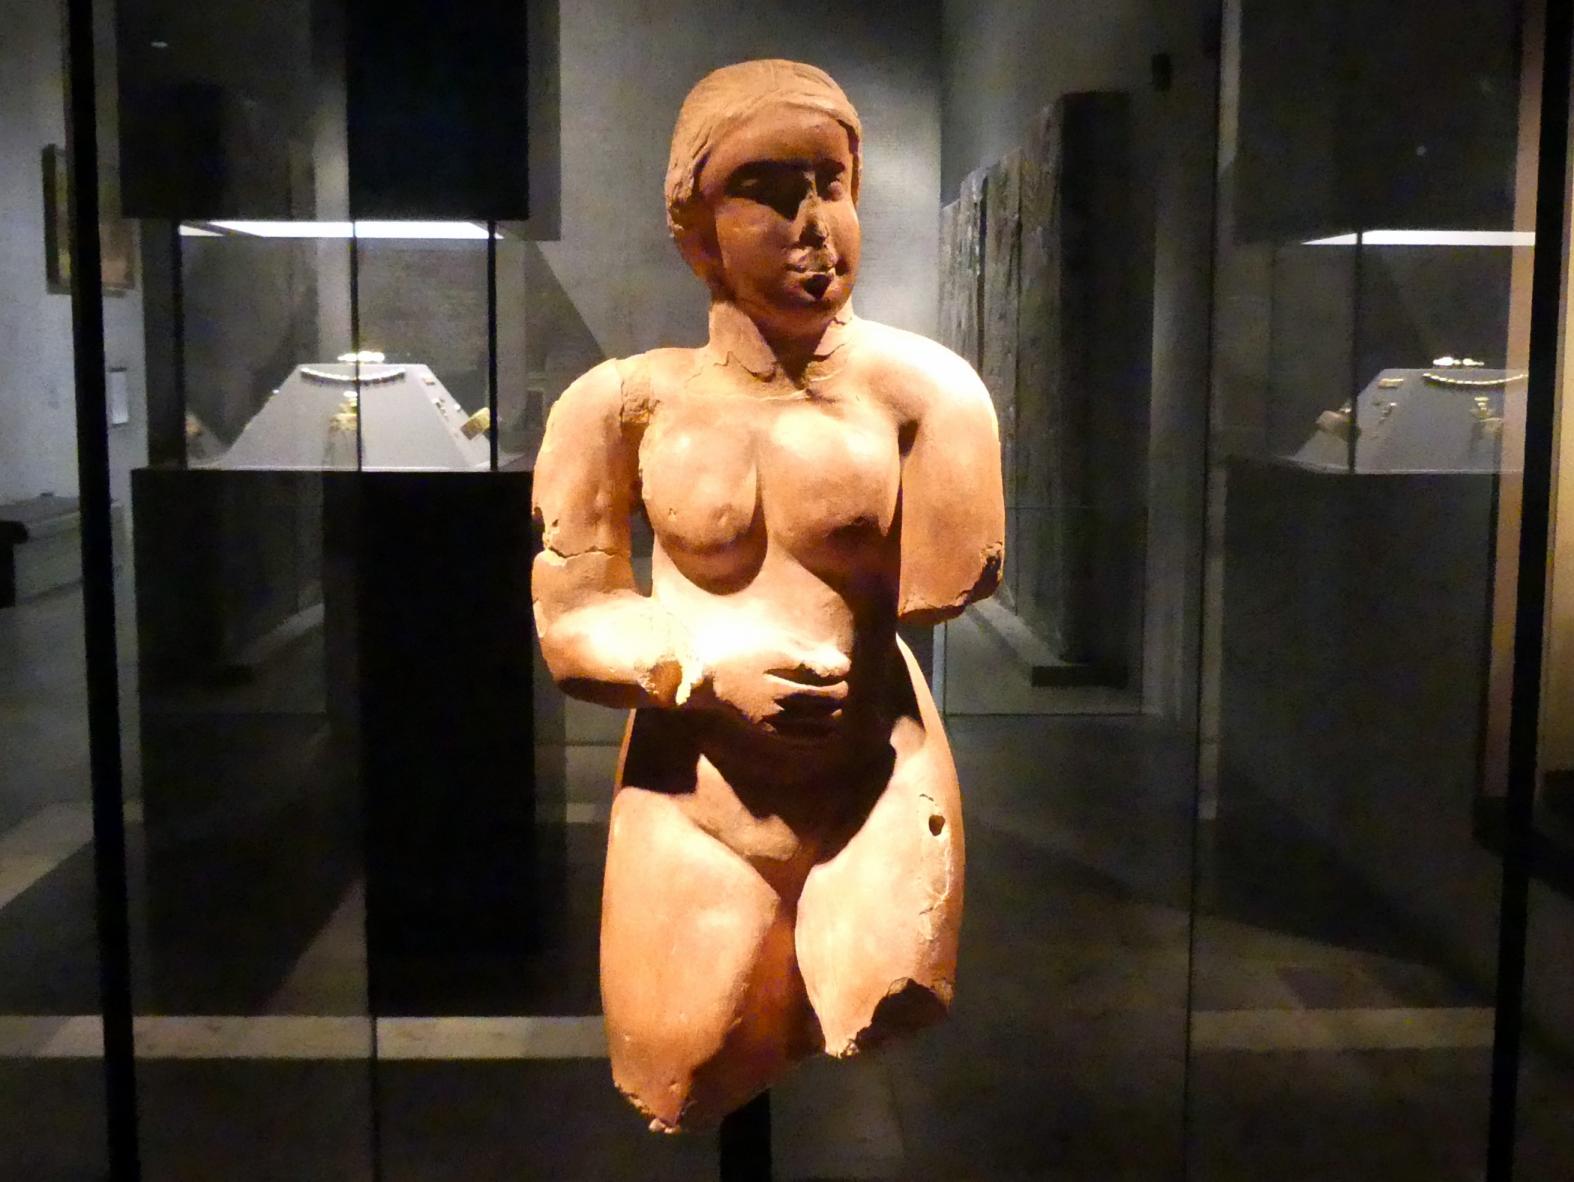 Standfigur einer Frau ("Meroitische Venus"), Meroitische Zeit, 200 v. Chr. - 500 n. Chr., 100 - 300